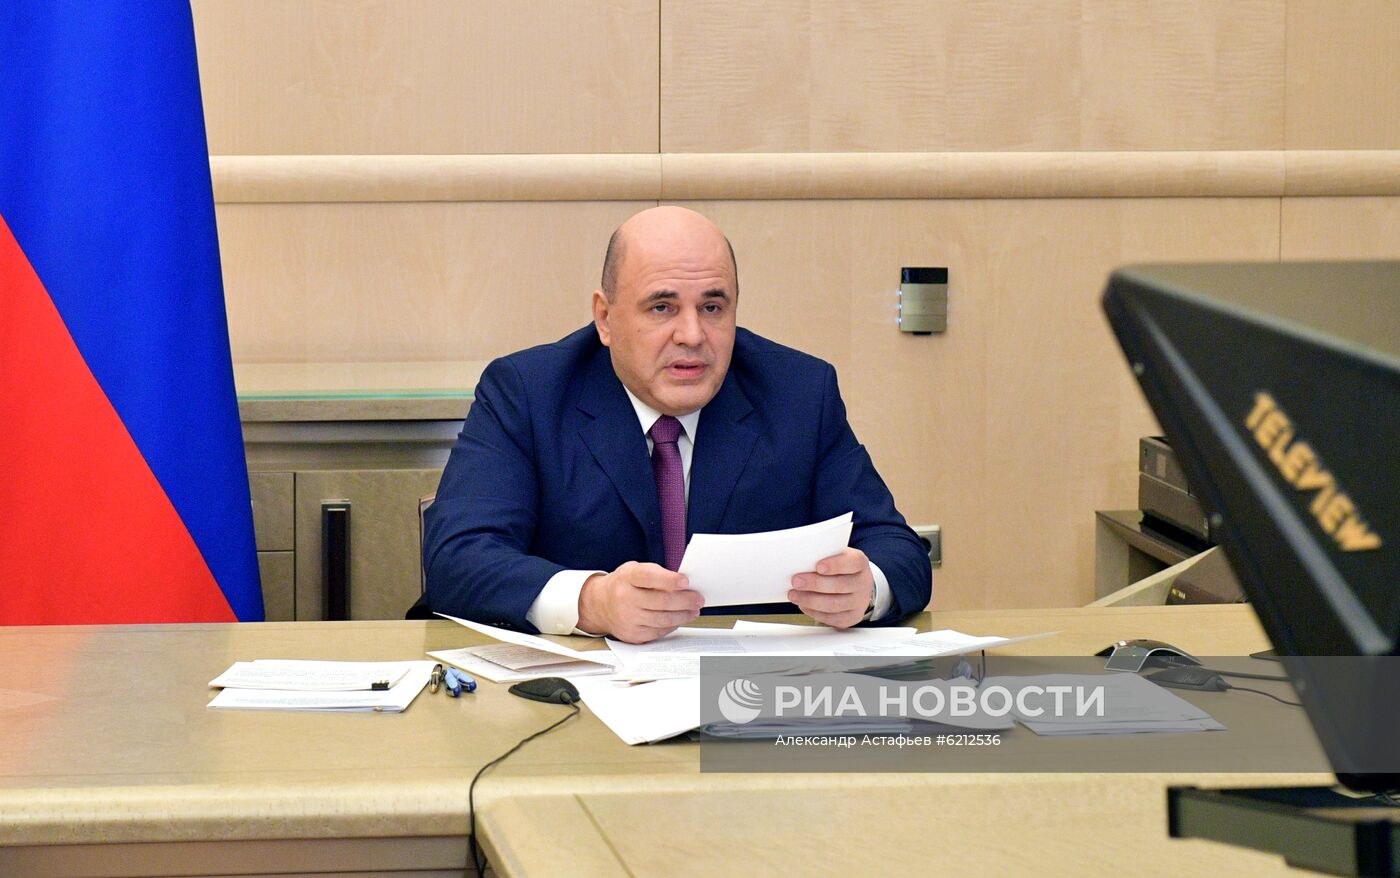 Премьер-министр РФ М. Мишустин провел совместное заседание Координационного совета по борьбе с коронавирусом и рабочей группы Госсовета по противодействию распространению коронавируса